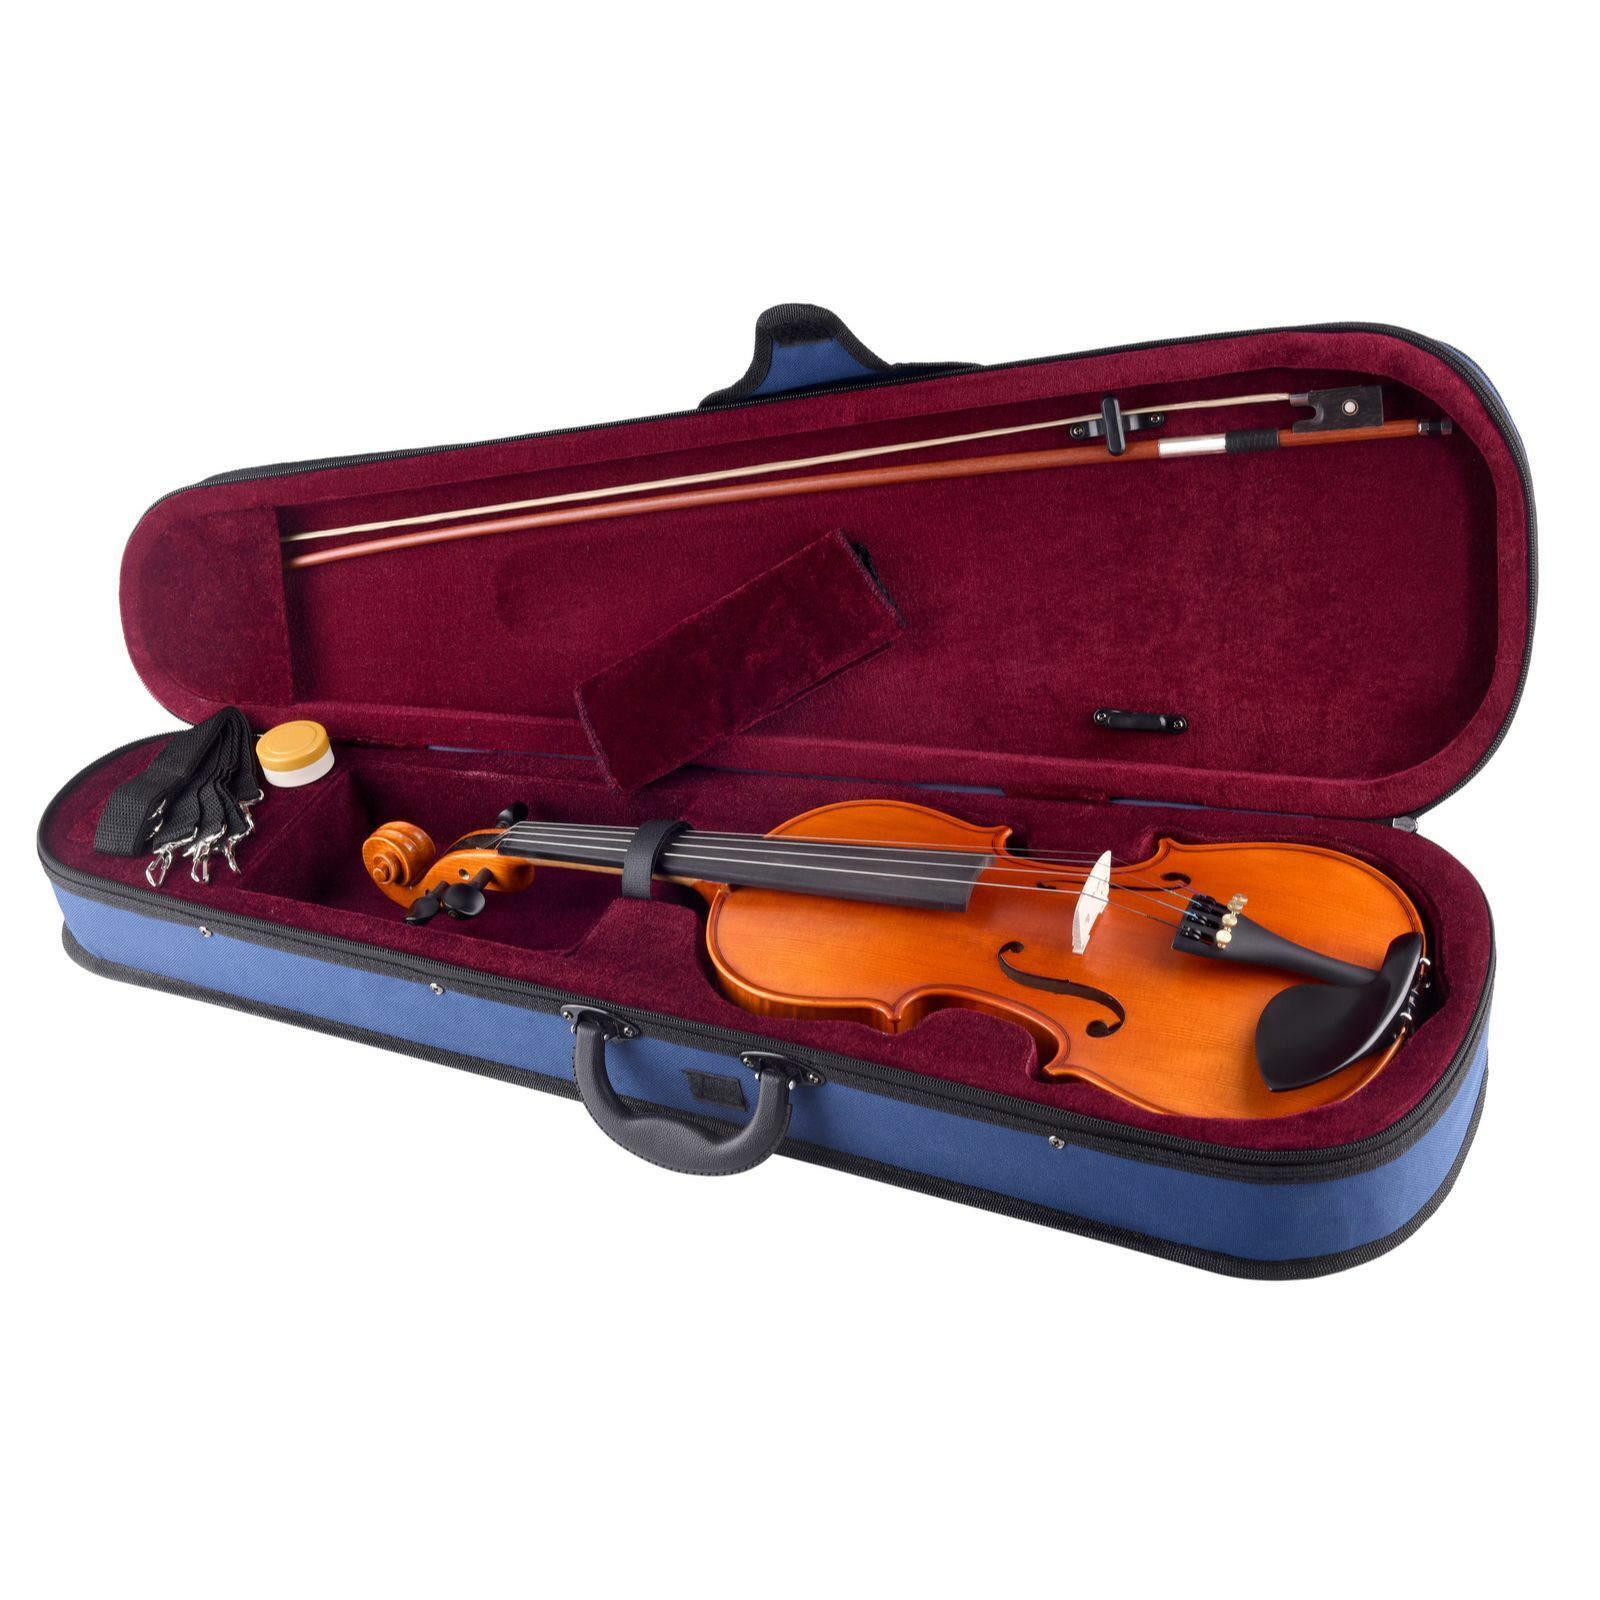 Concerto Violin Outfit - 4/4 Size School Violin